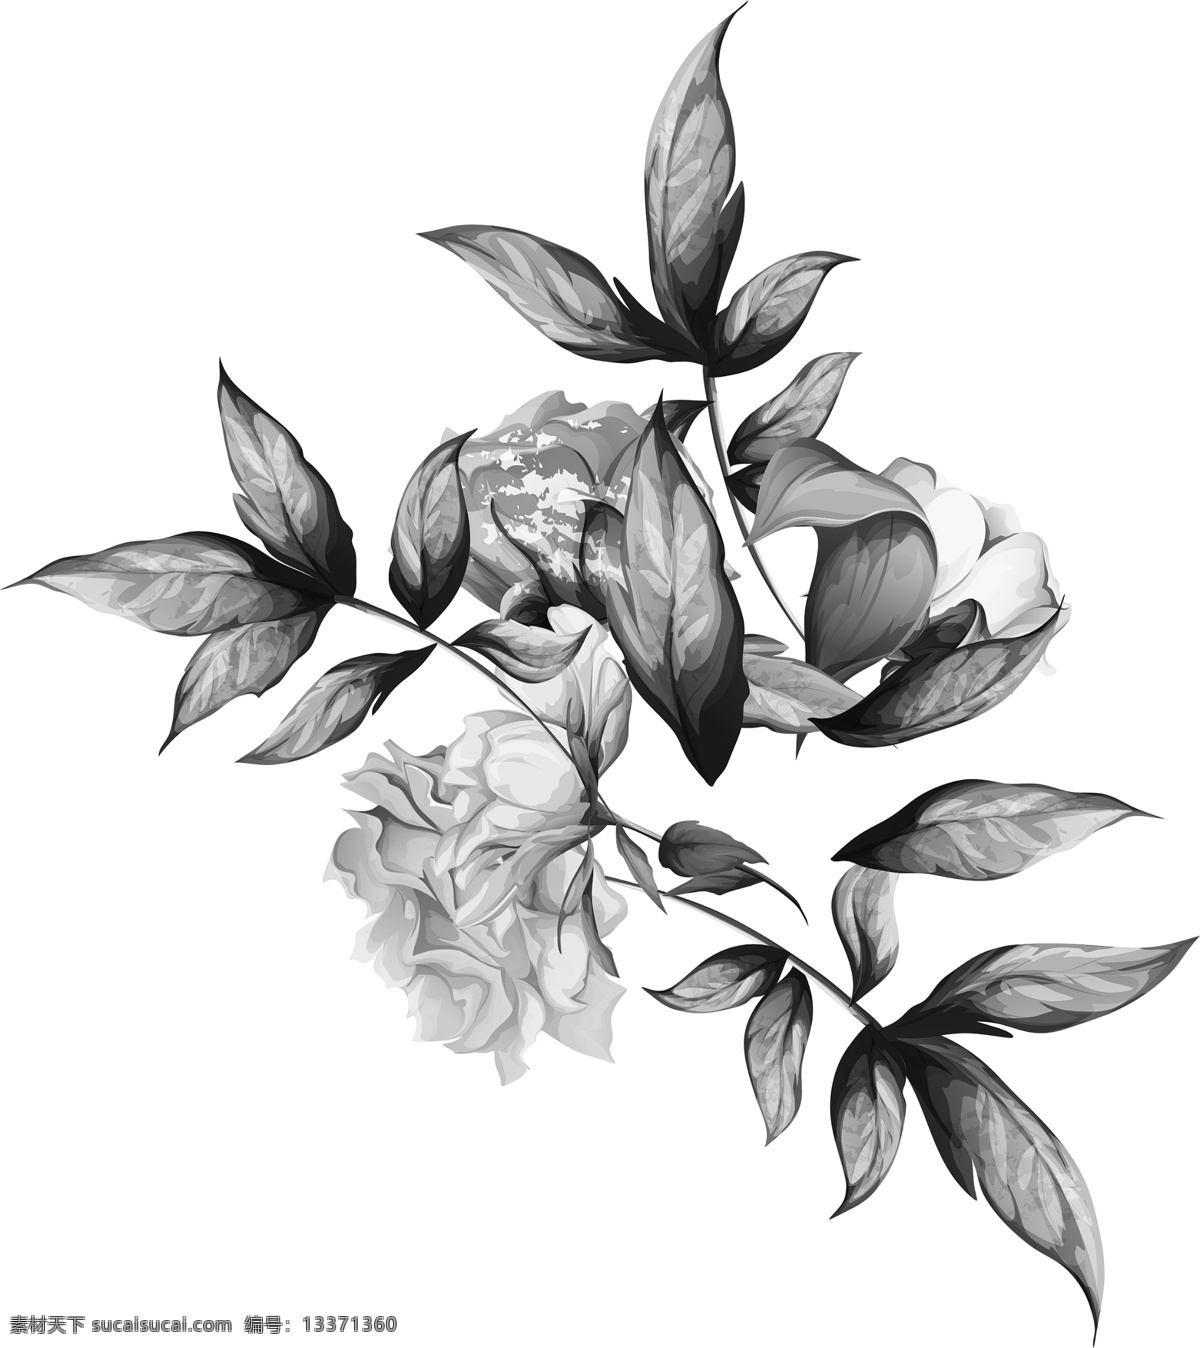 灰色花图片 热带花 灰色花 花叶 暗花 手绘花 服装设计